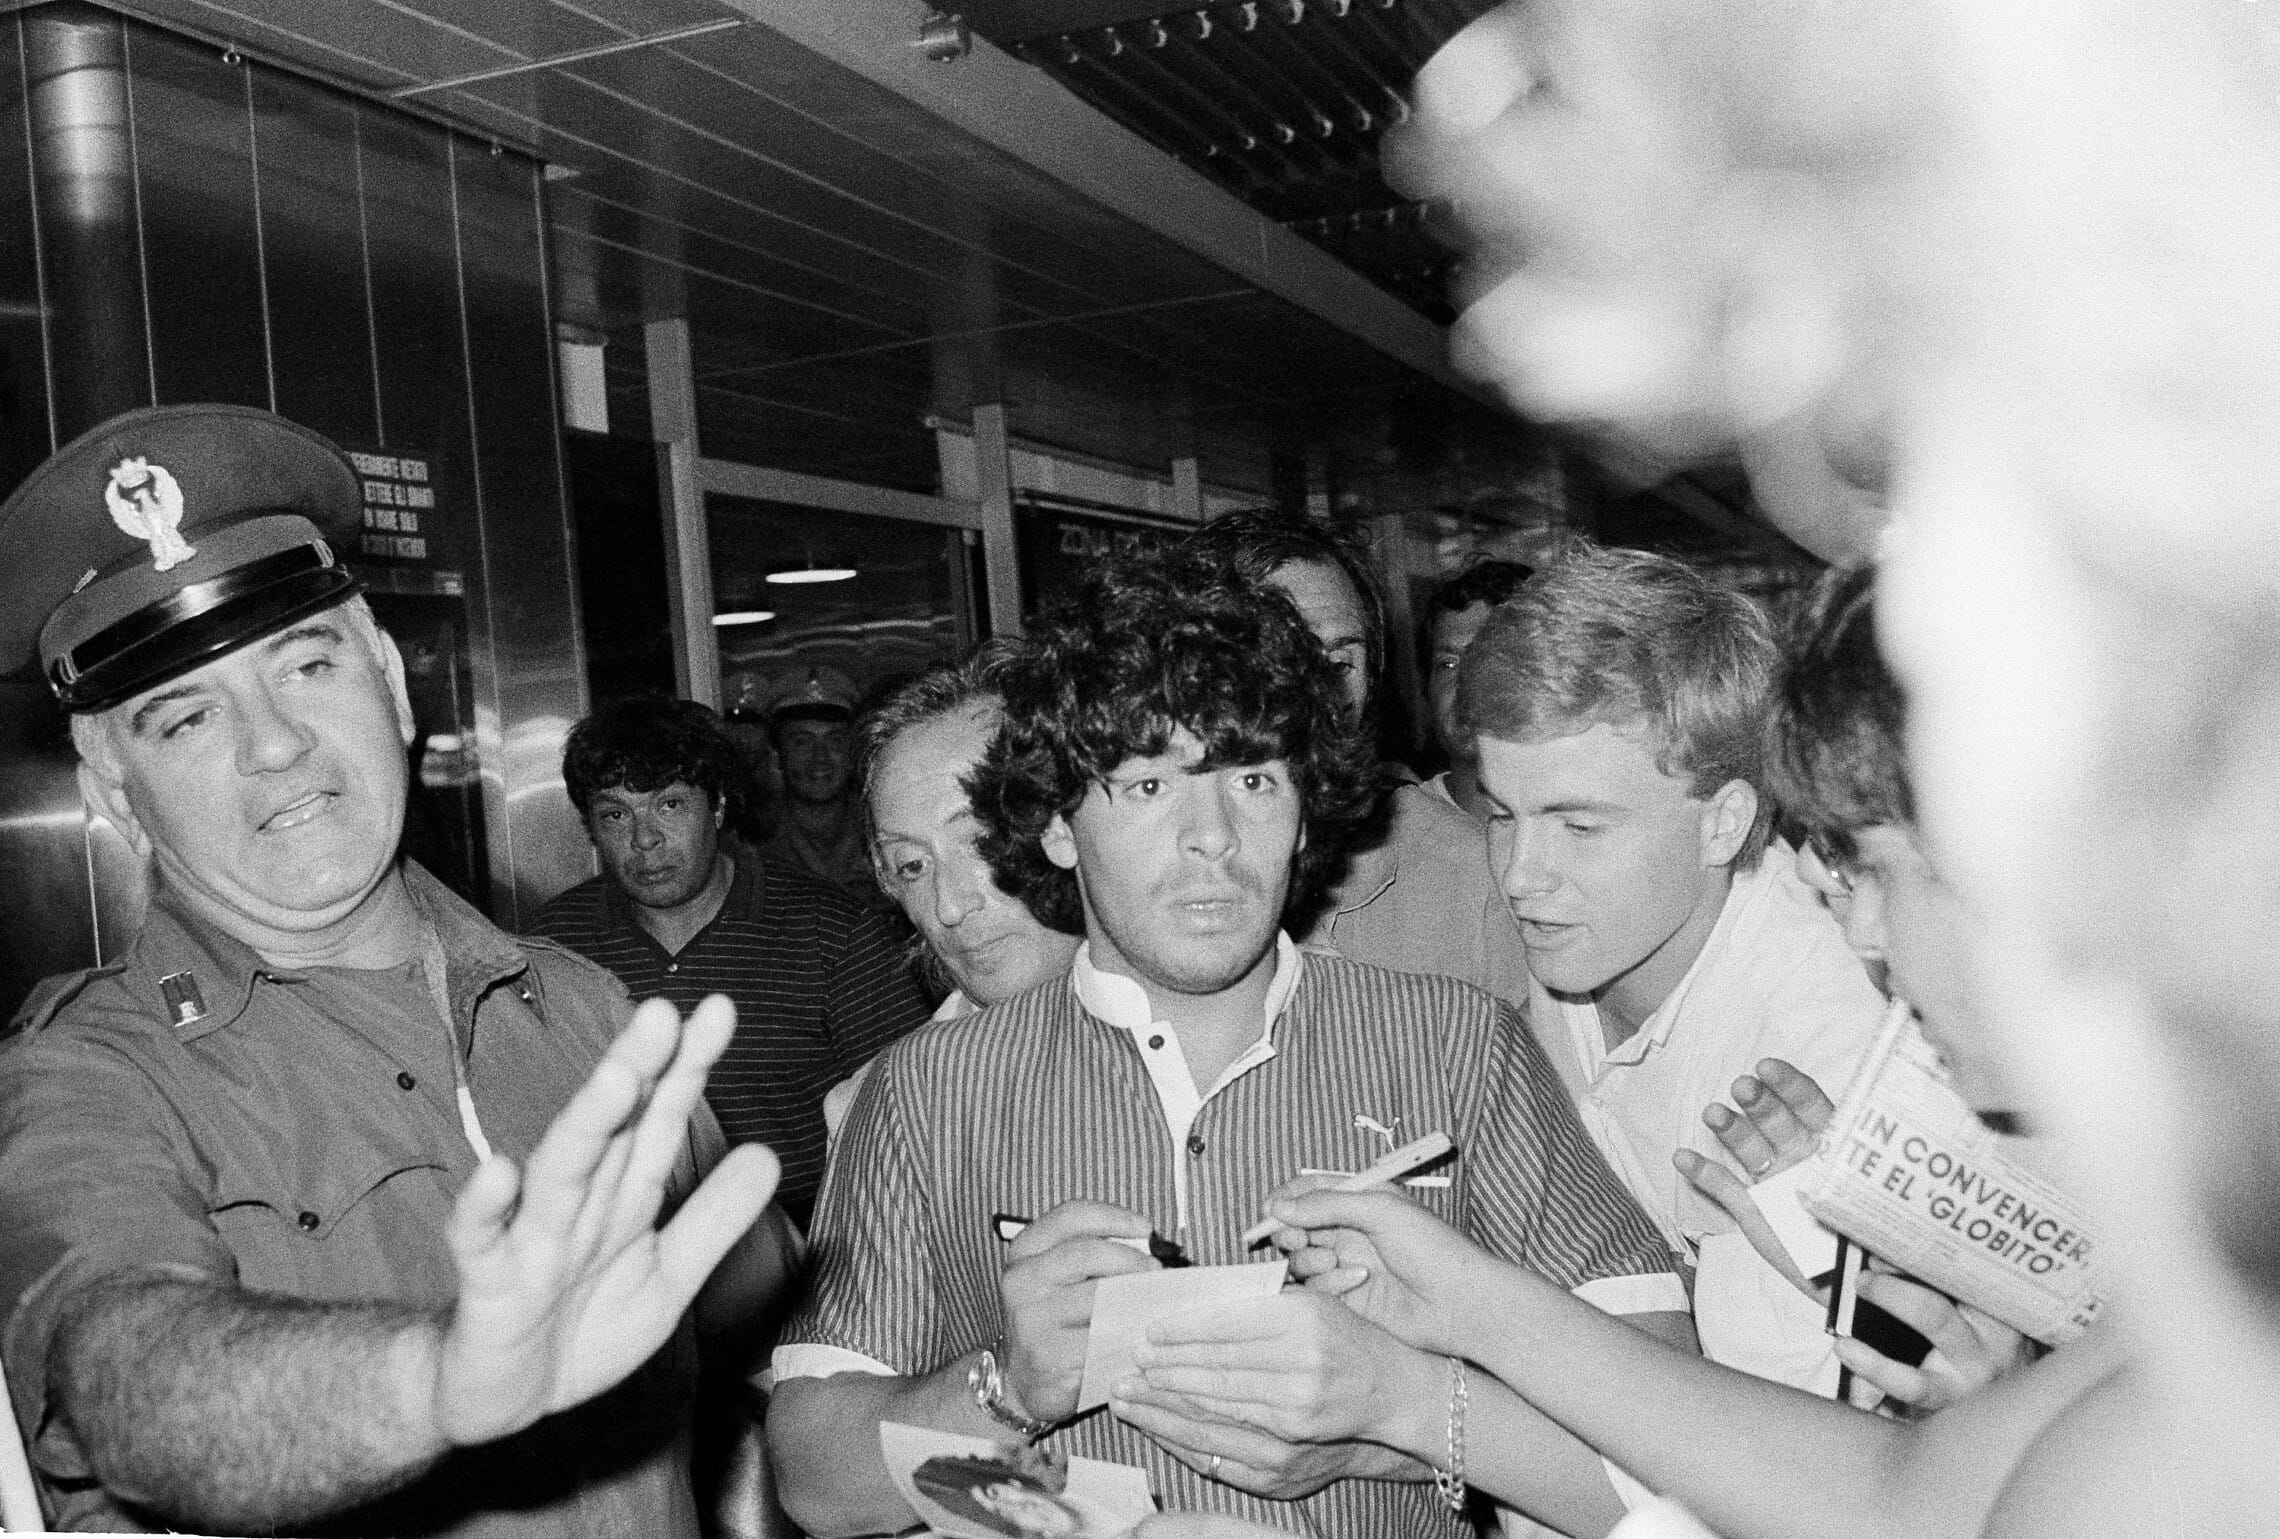 כוכב הכדורגל דייגו מראדונה חותם למעריצים הם הגעתו לנמל התעופה ברומא, 24 ביולי 1984 (צילום: AP Photo/Bruno Mosconi)